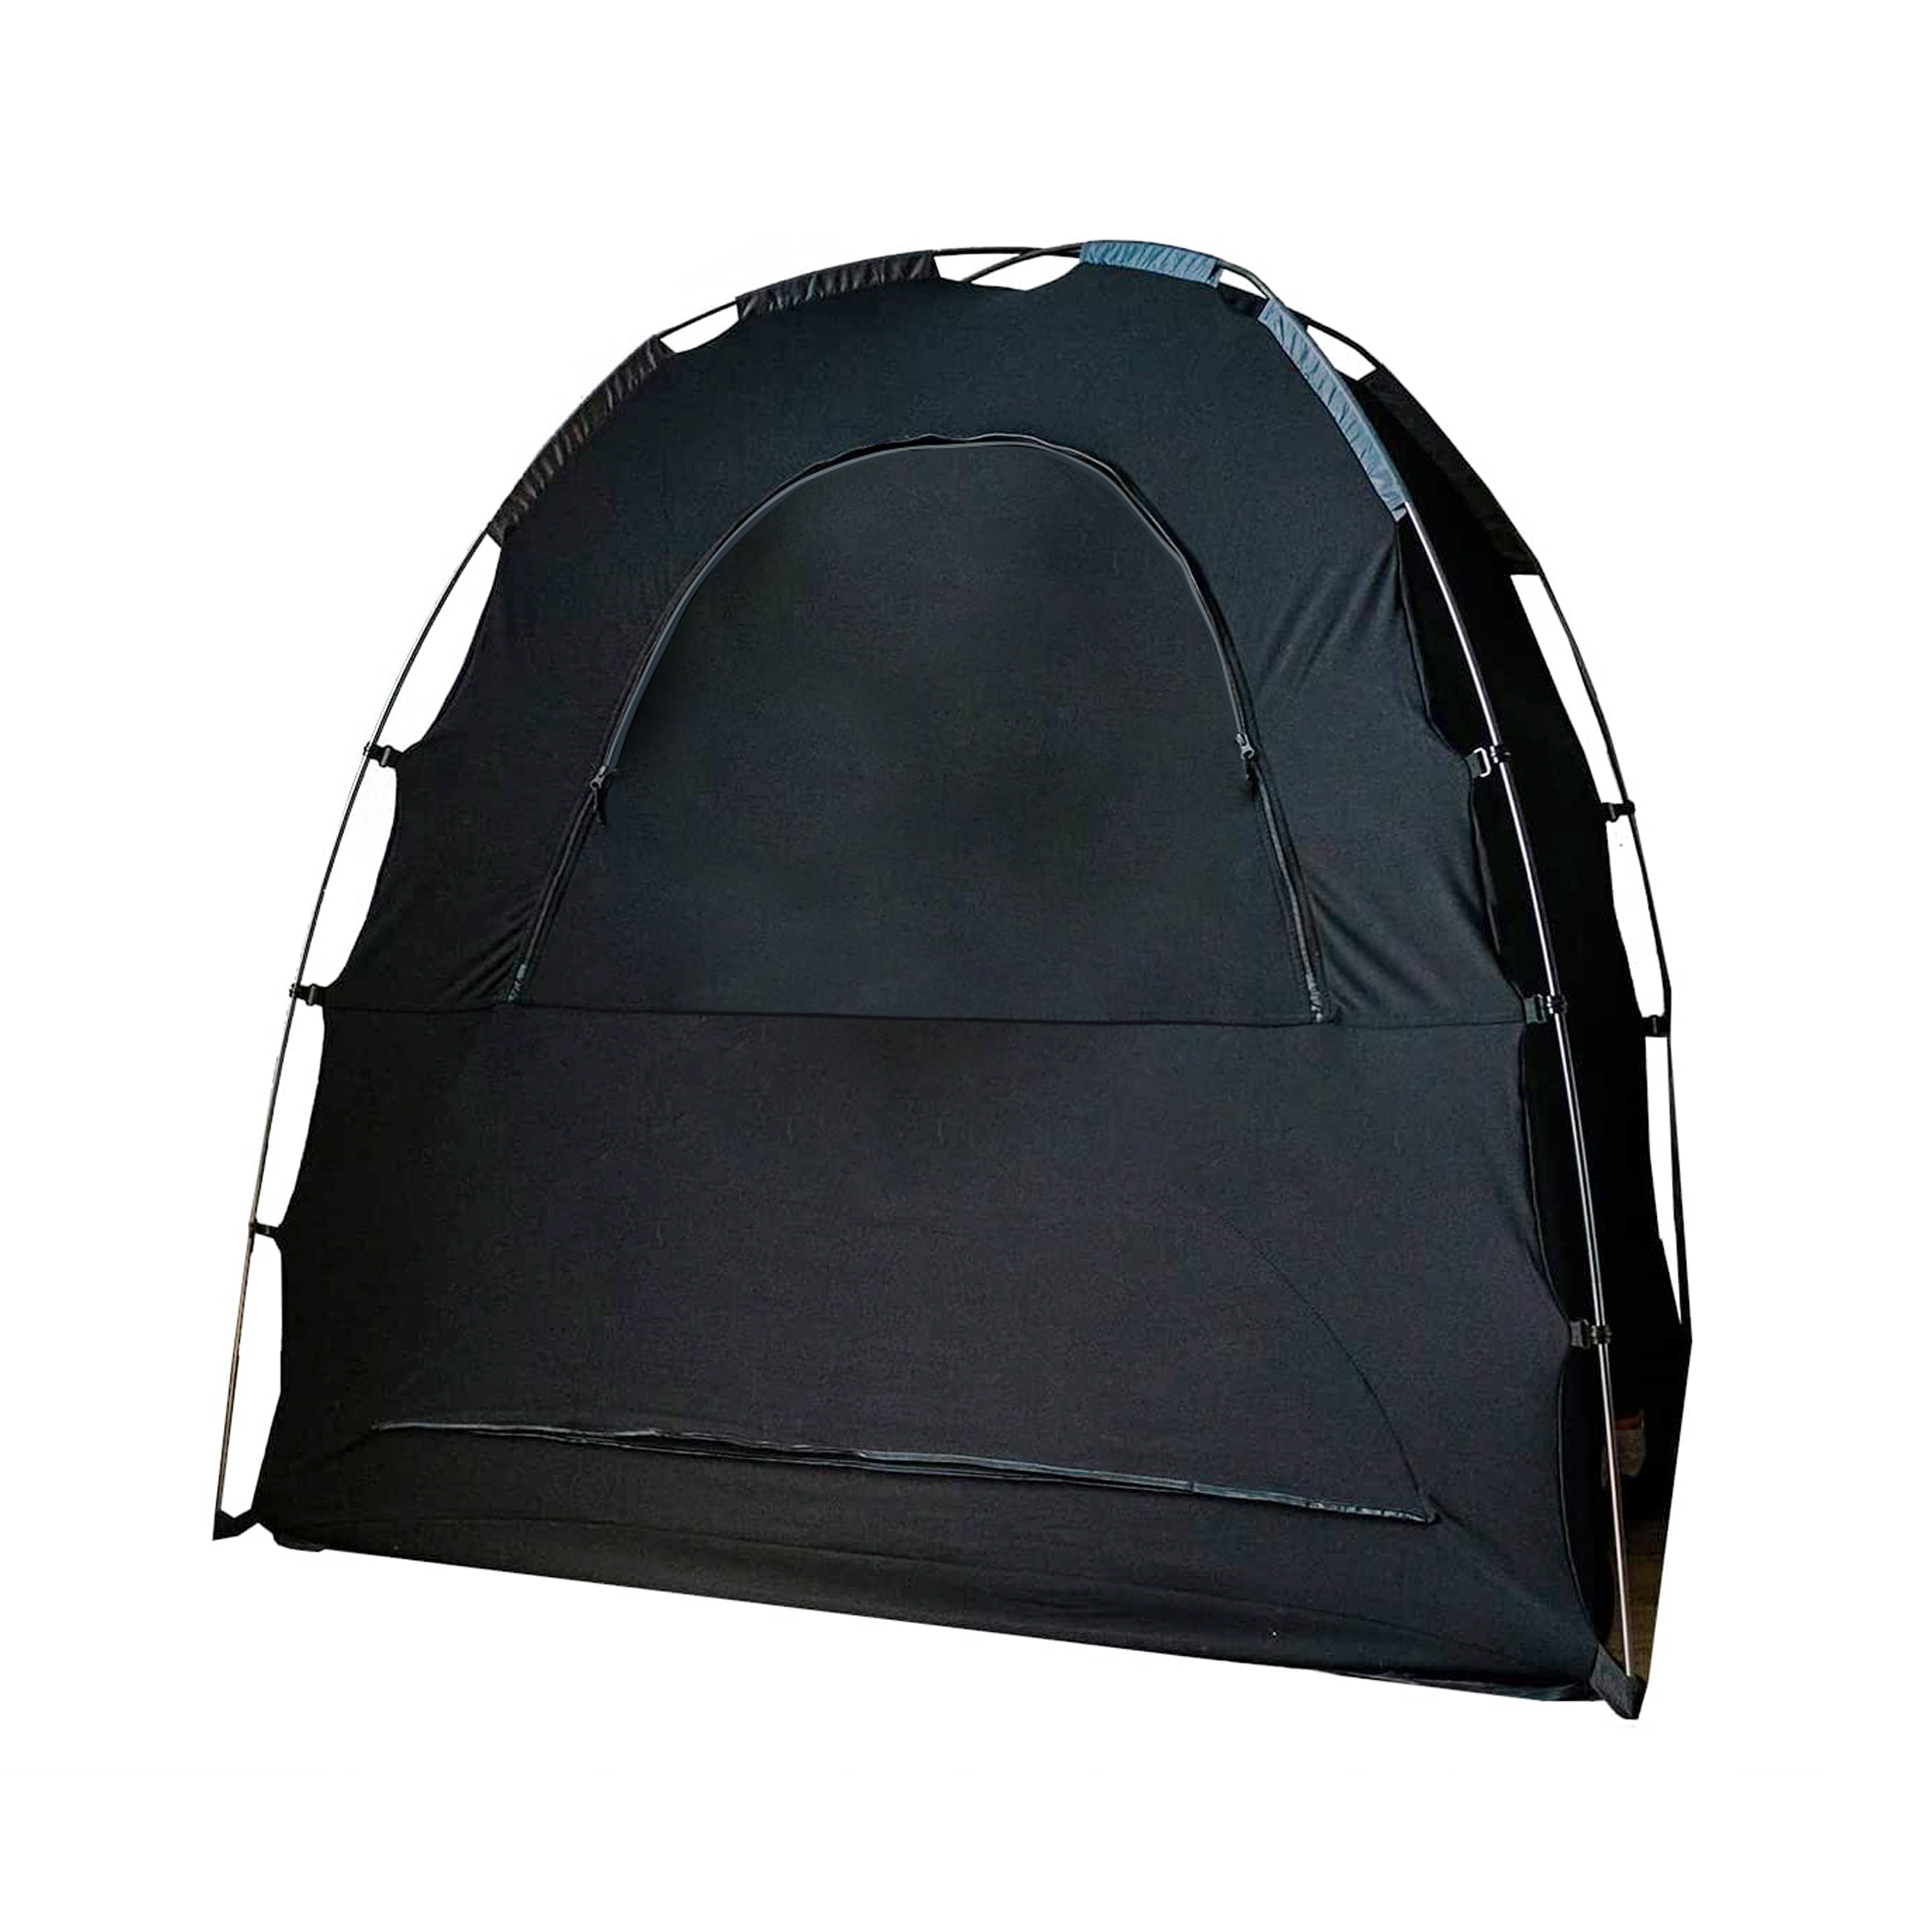 Tragbares Sichtschutz-Pod mit Verdunkelungsdach, Schlafplatz für Kinder ab 4 Monaten, mit Monitortasche und Reißverschluss, Verdunkelung